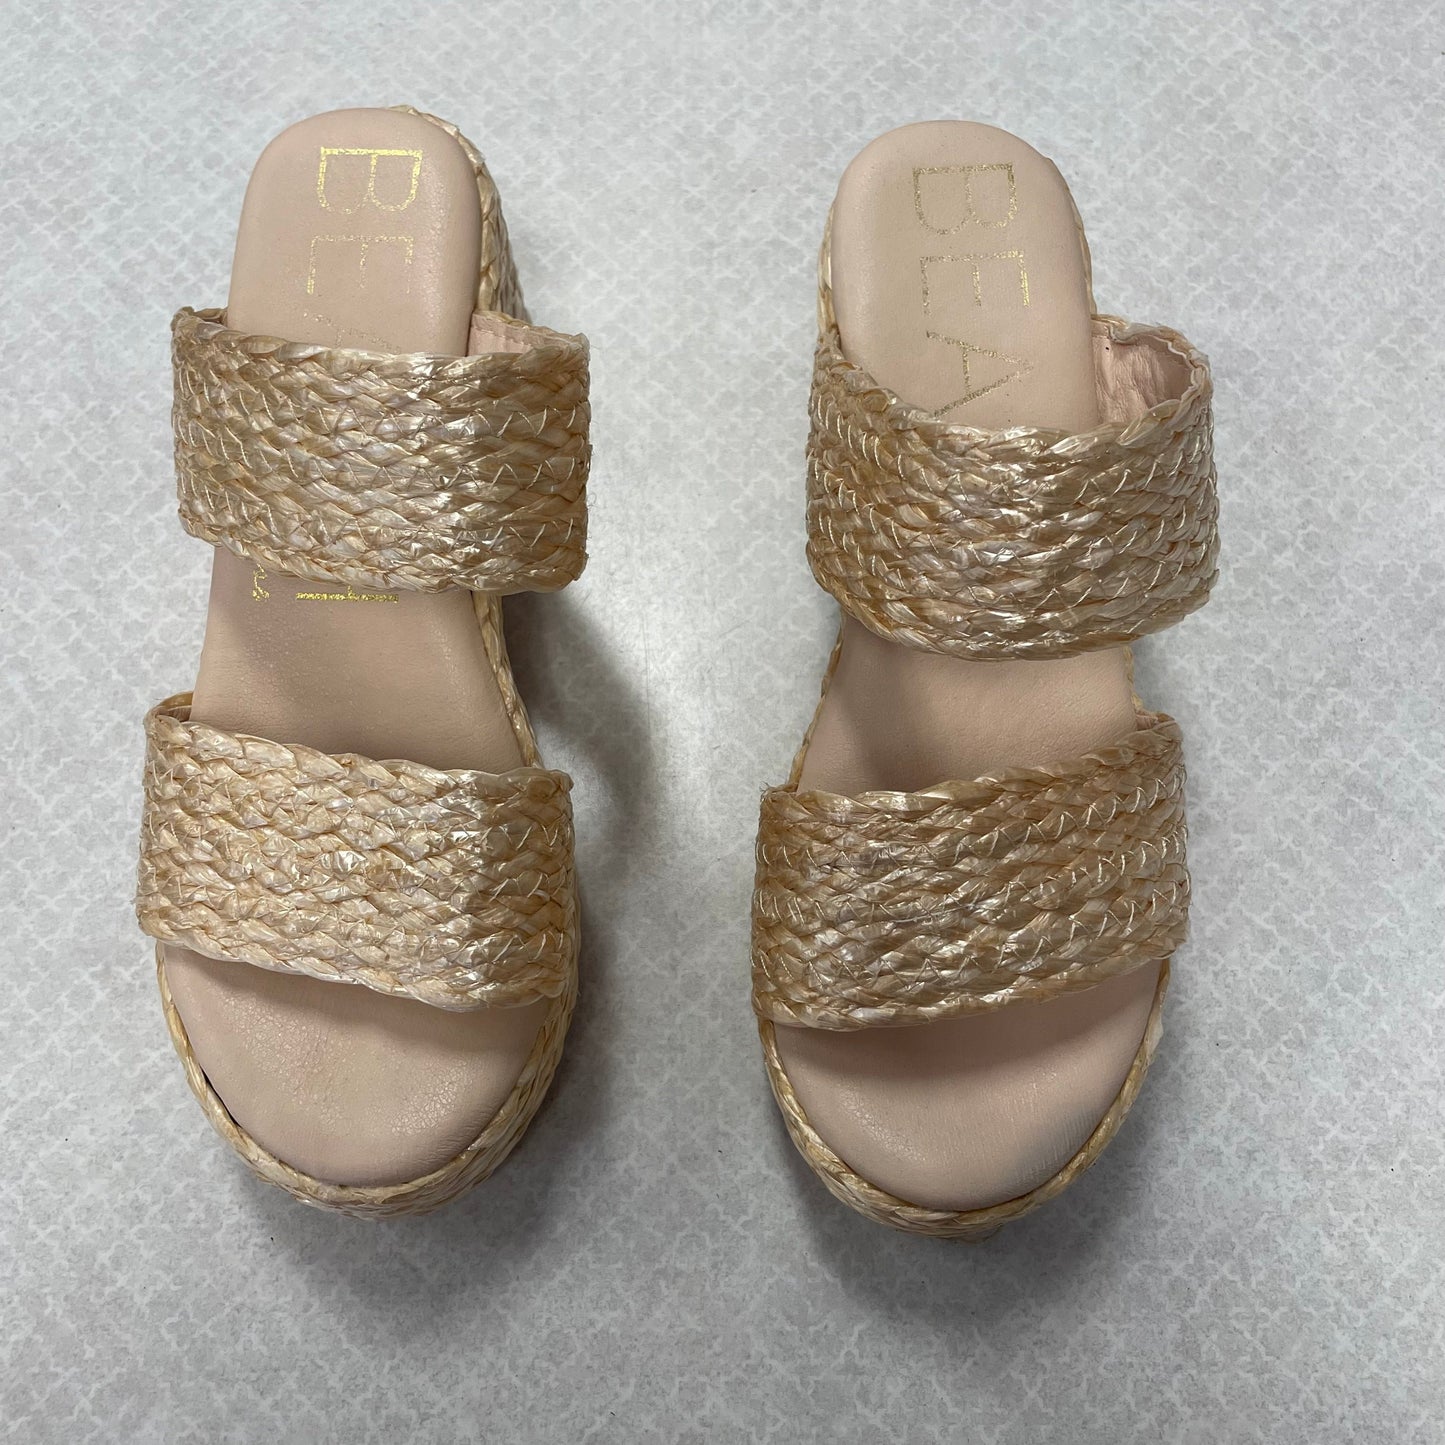 Beige Sandals Heels Block Matisse, Size 8